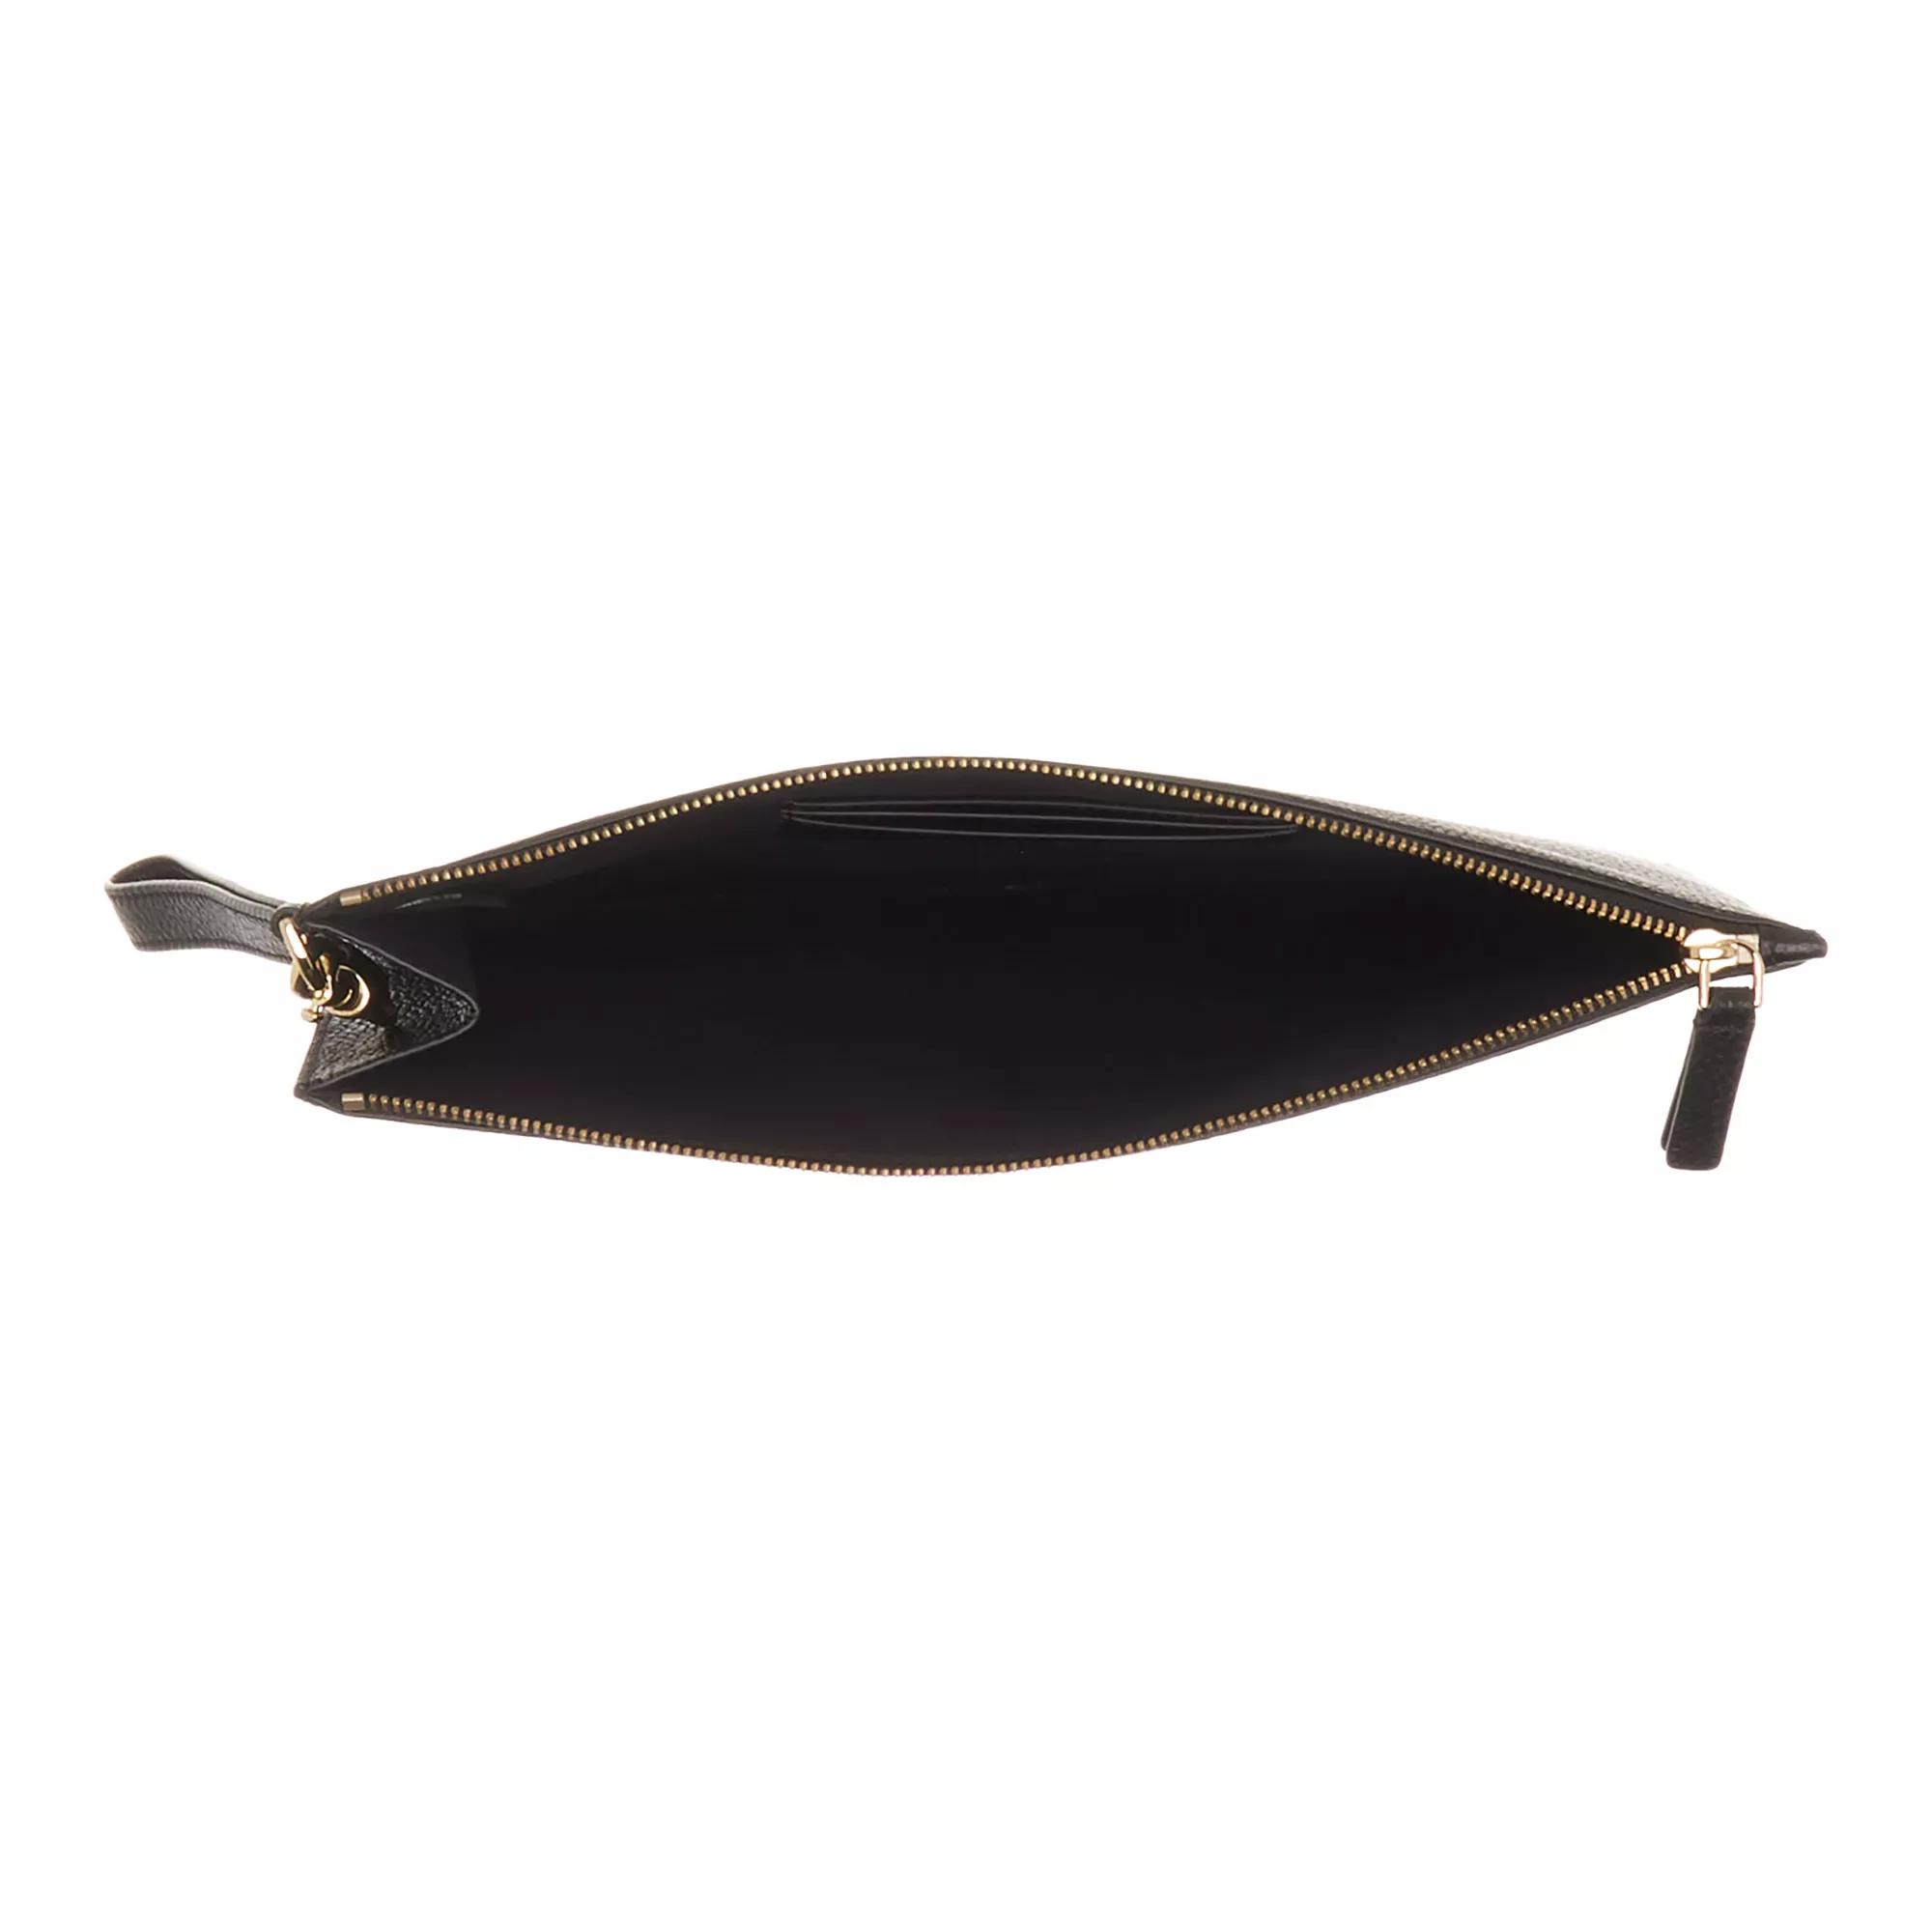 Marc Jacobs Kleine handtassen Leather The Items Wallet in zwart